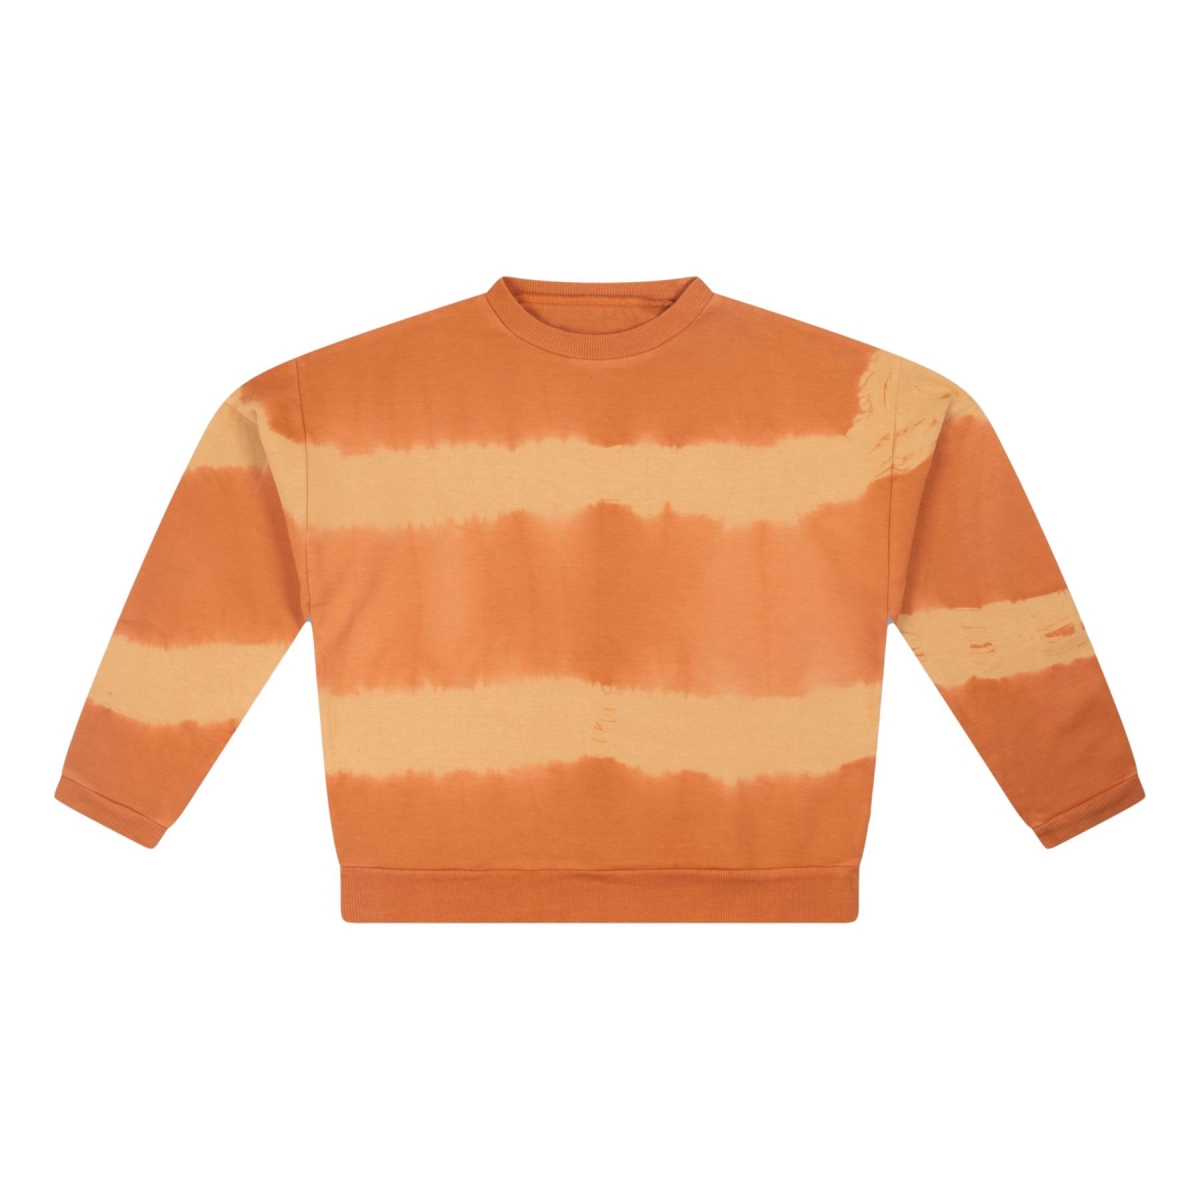 Repose AMS Sweatershirt Fudge marble Brown Q1Q2 21-20